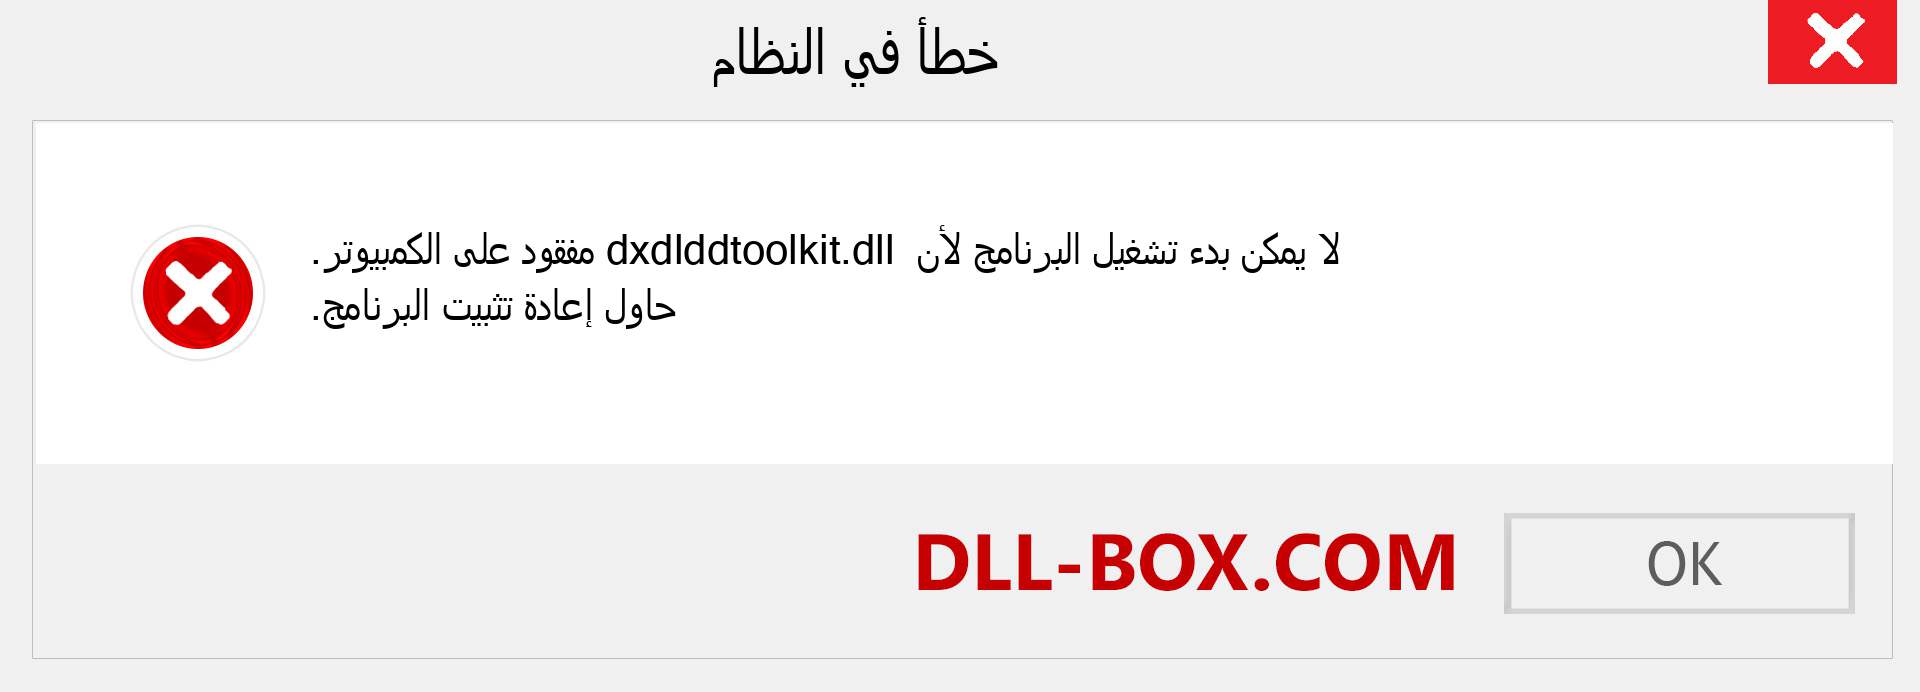 ملف dxdlddtoolkit.dll مفقود ؟. التنزيل لنظام التشغيل Windows 7 و 8 و 10 - إصلاح خطأ dxdlddtoolkit dll المفقود على Windows والصور والصور